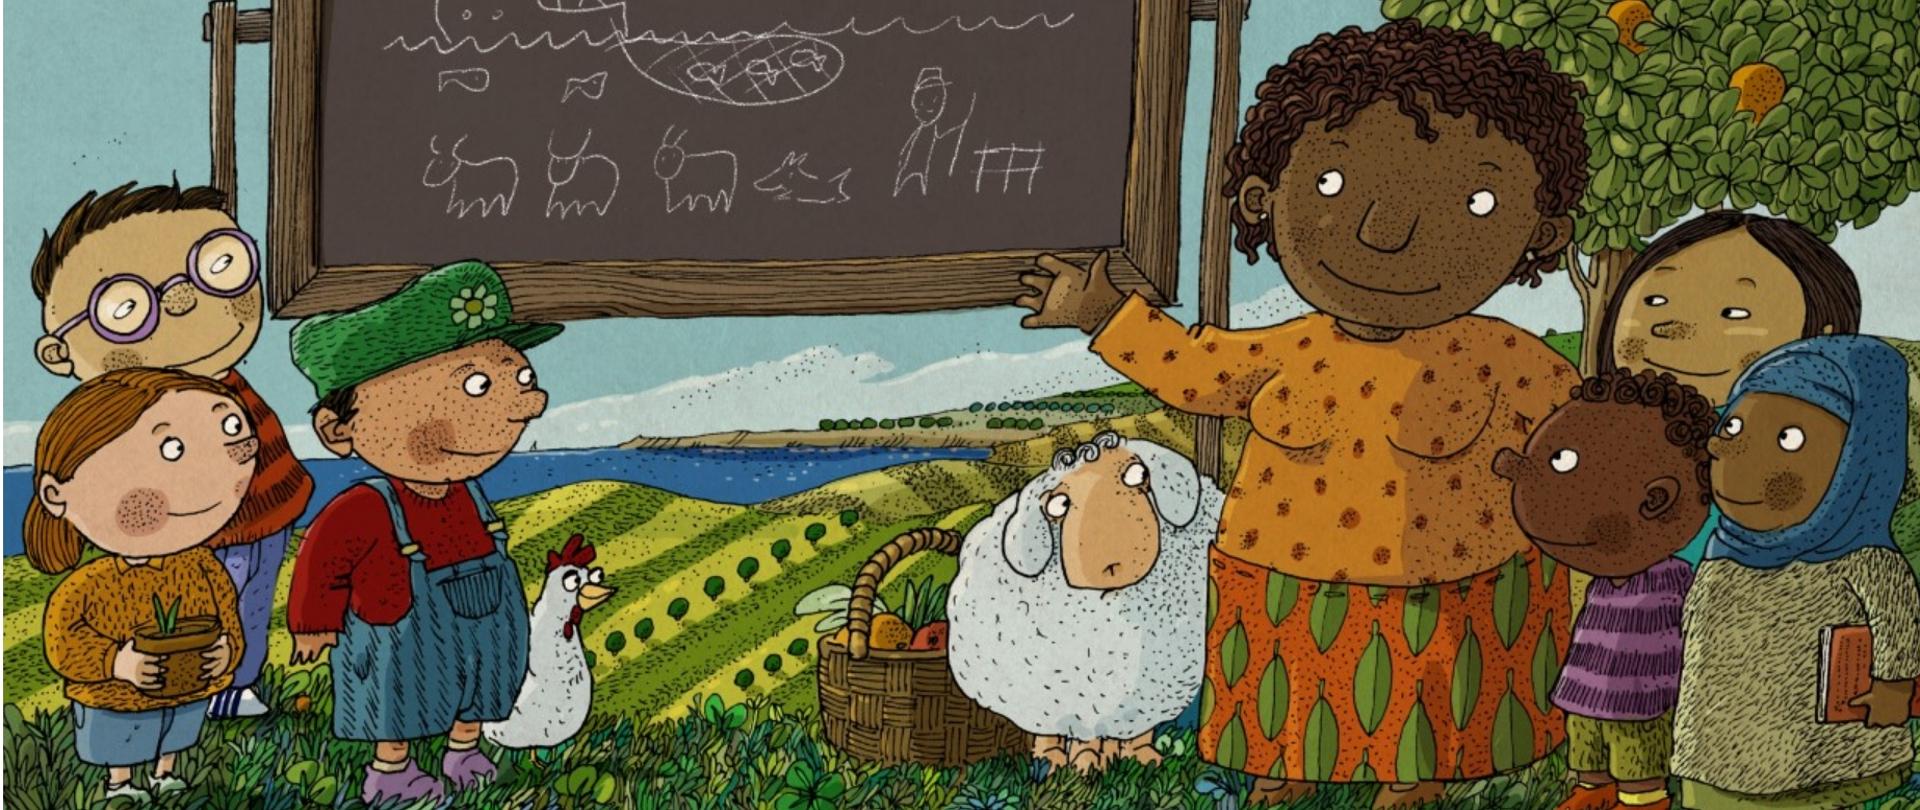 Ilustracja dla dzieci promująca konkurs z okazji Światowego Dnia Żywności 2021. Na grafice znajdują się od lewej - troje dzieci - dziewczynka trzymająca doniczkę z roślinką, dwóch chłopców, kura, wiklinowy kosz z owocami, owca, kobieta, troje dzieci - ciemnoskóry chłopiec, dziewczynka o azjatyckich rysach, dziewczynka w chustką na głowie. W tle tablica z dziecięcymi rysunkami kredą; trzech krów, psa, człowieka i sieci z rybami.